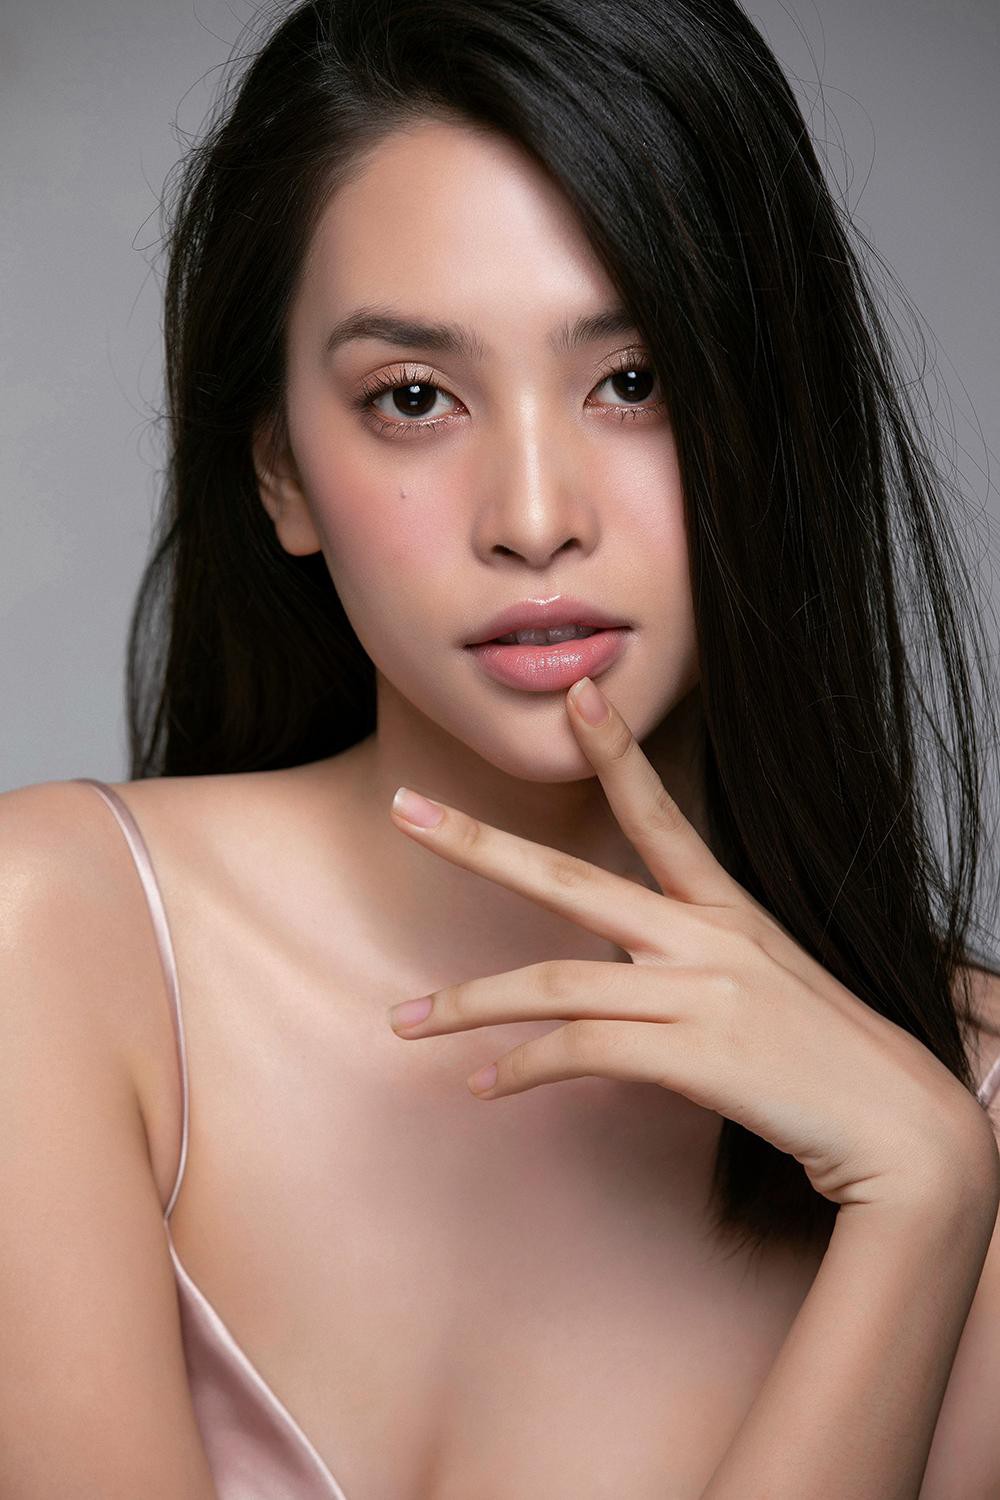 Trang điểm trong veo, Hoa hậu Tiểu Vy vẫn đẹp hút hồn với gương mặt đạt 'tỷ lệ vàng' - Ảnh 7.